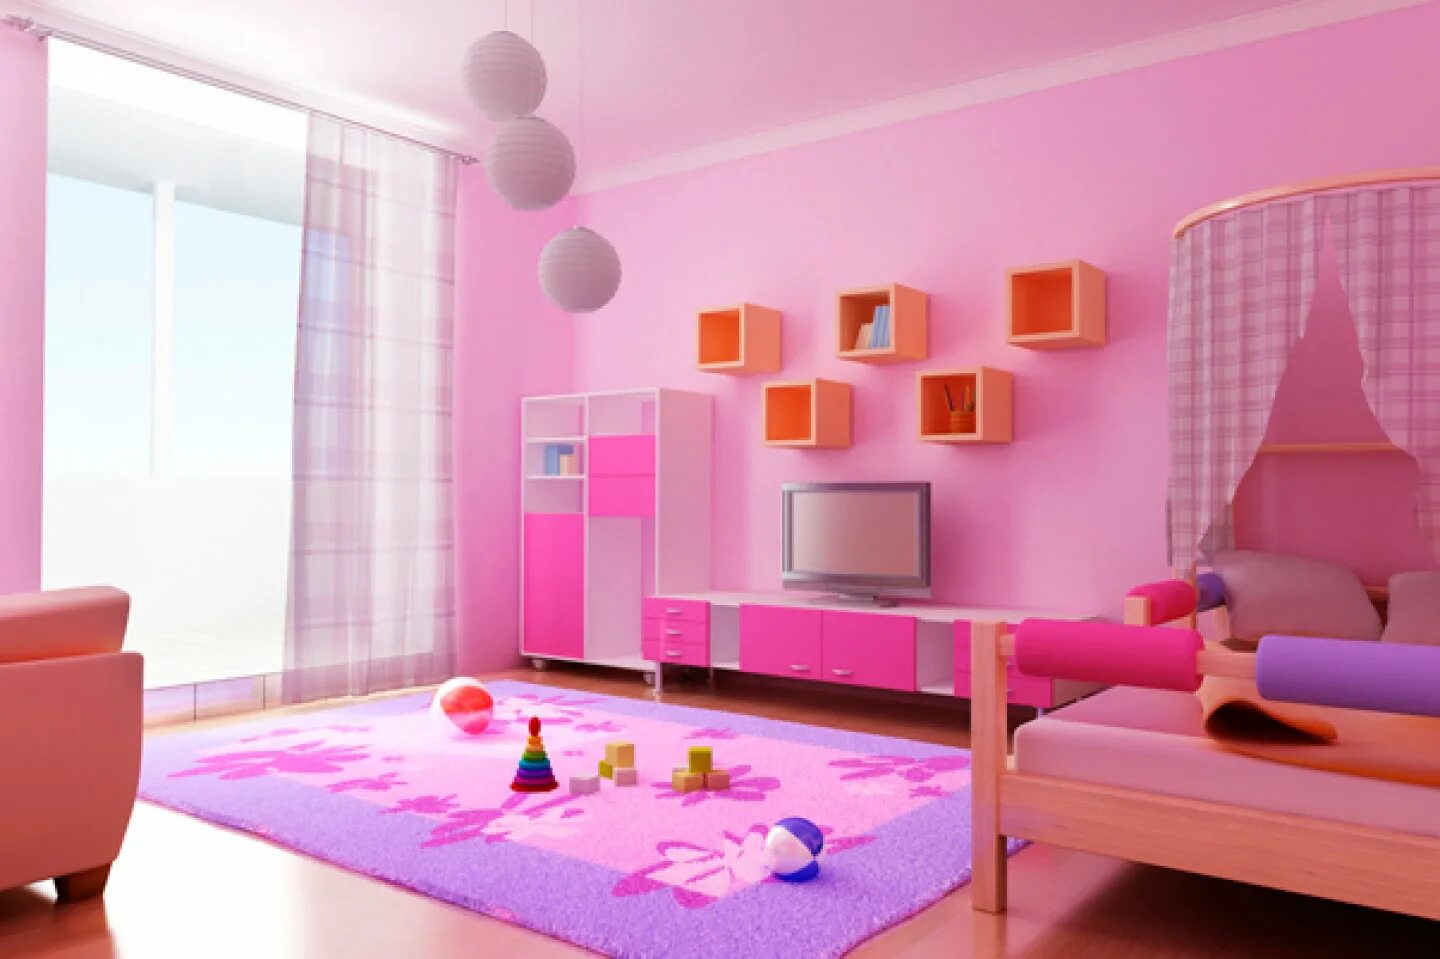 Мебель новая комната. Интерьер комнаты. Интерьер детской комнаты. Розовый интерьер комнаты. Интерьер комнаты для девочки.